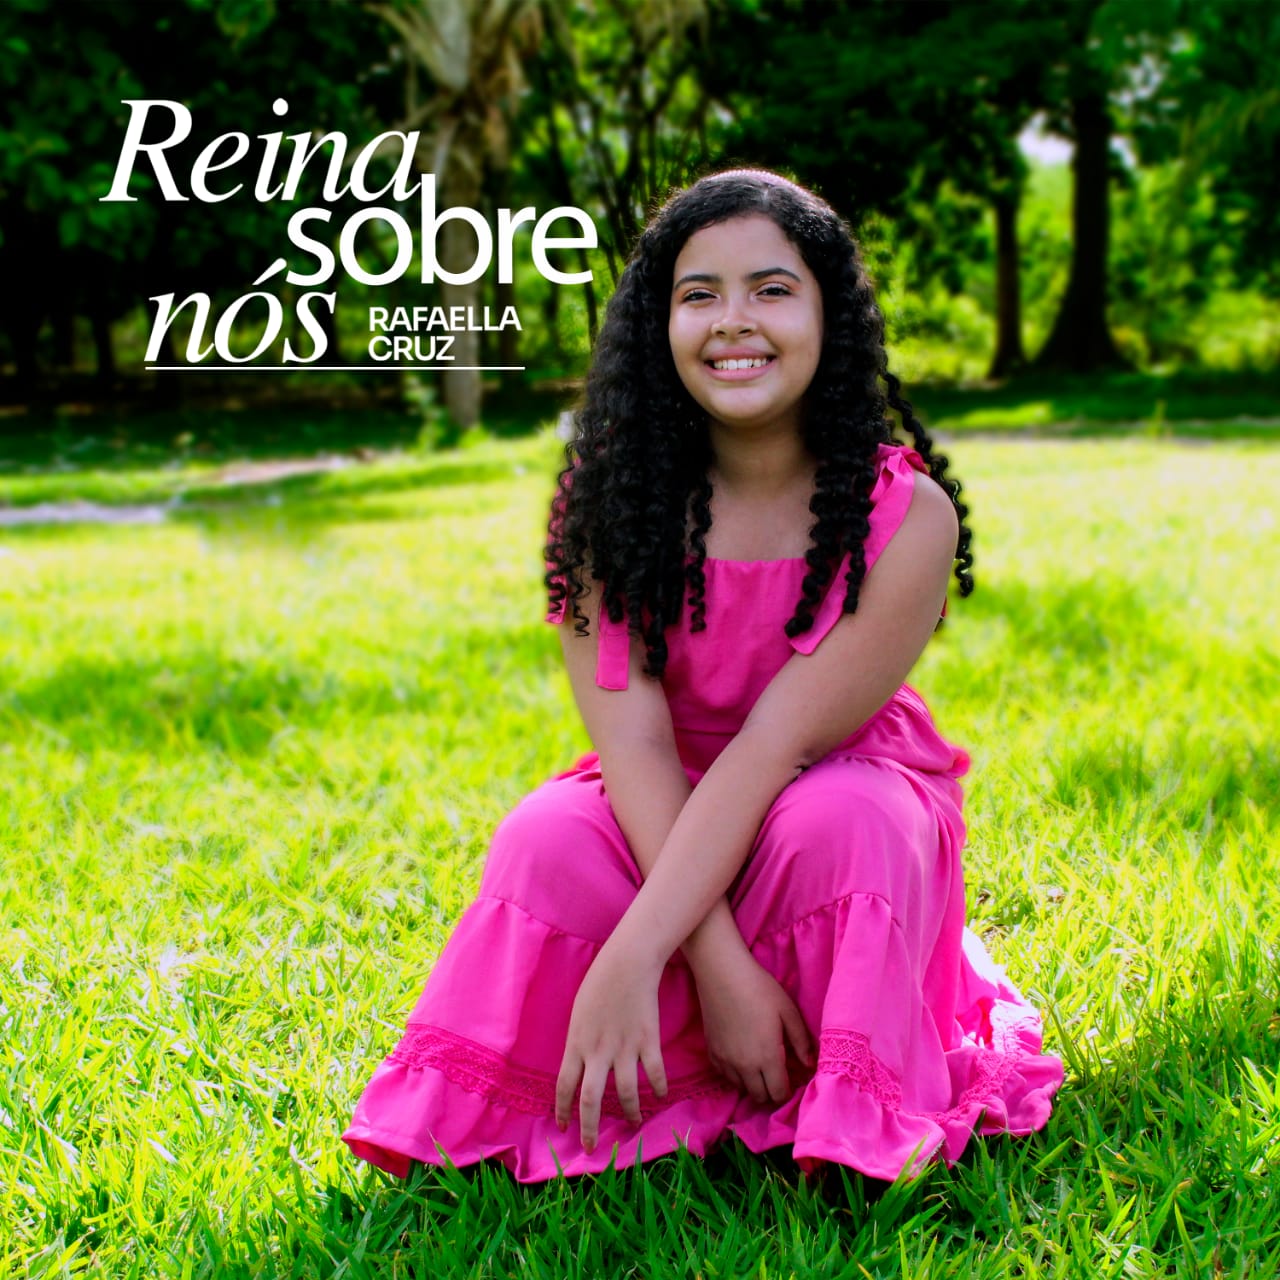 A delicadeza da jovem Rafaella Cruz em seu primeiro single, “Reina sobre nós”